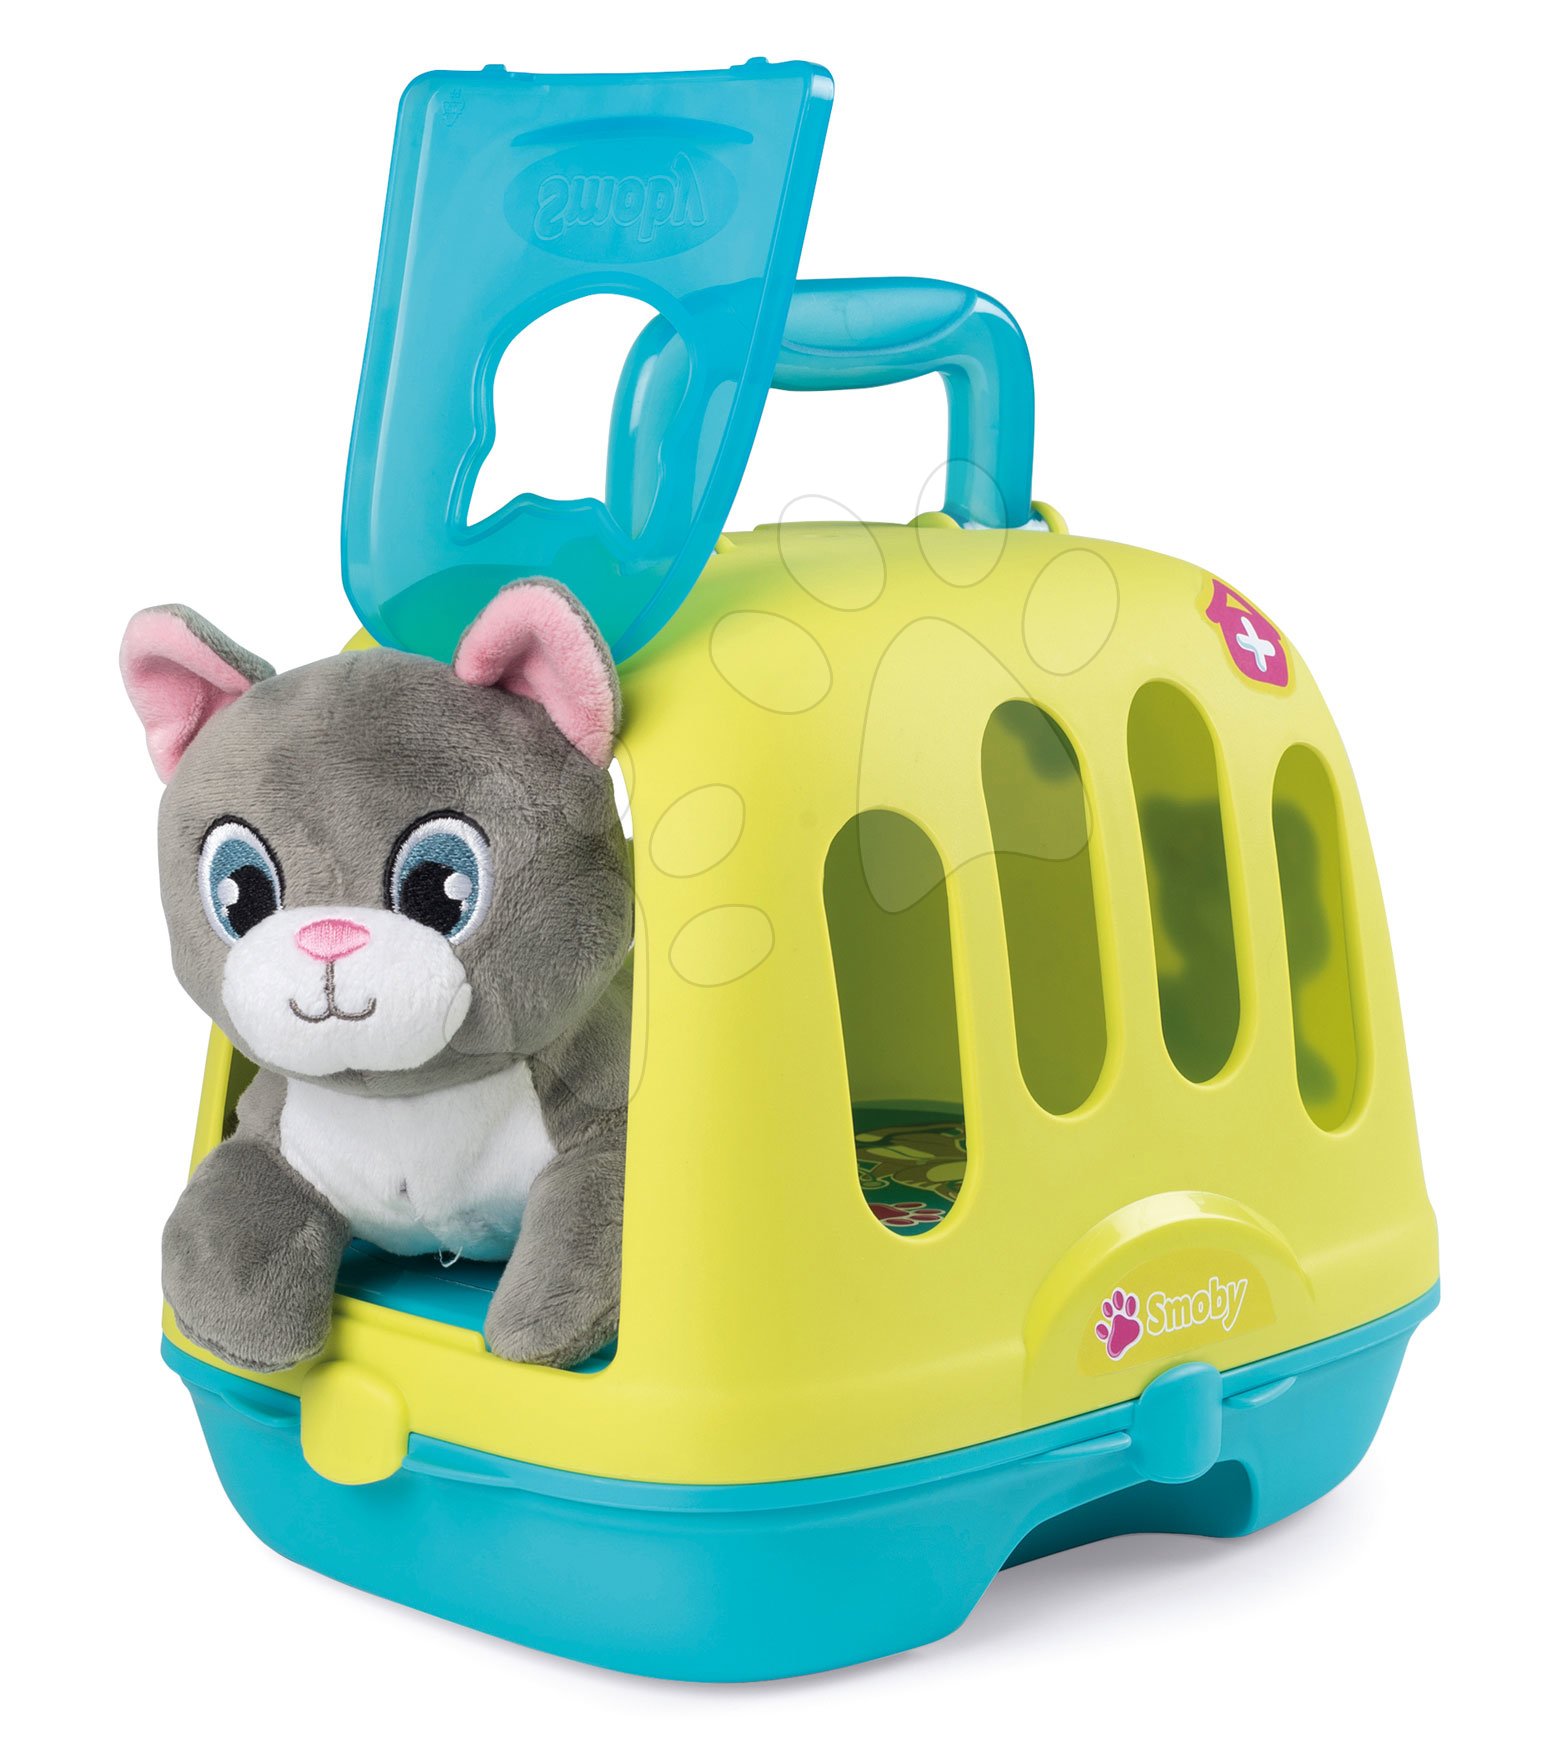 Lekárské vozíky pre deti - Veterinársky kufrík Veterinary Case Smoby s plyšovou mačičkou so 4 zvukmi a 10 doplnkov pre zvieratká